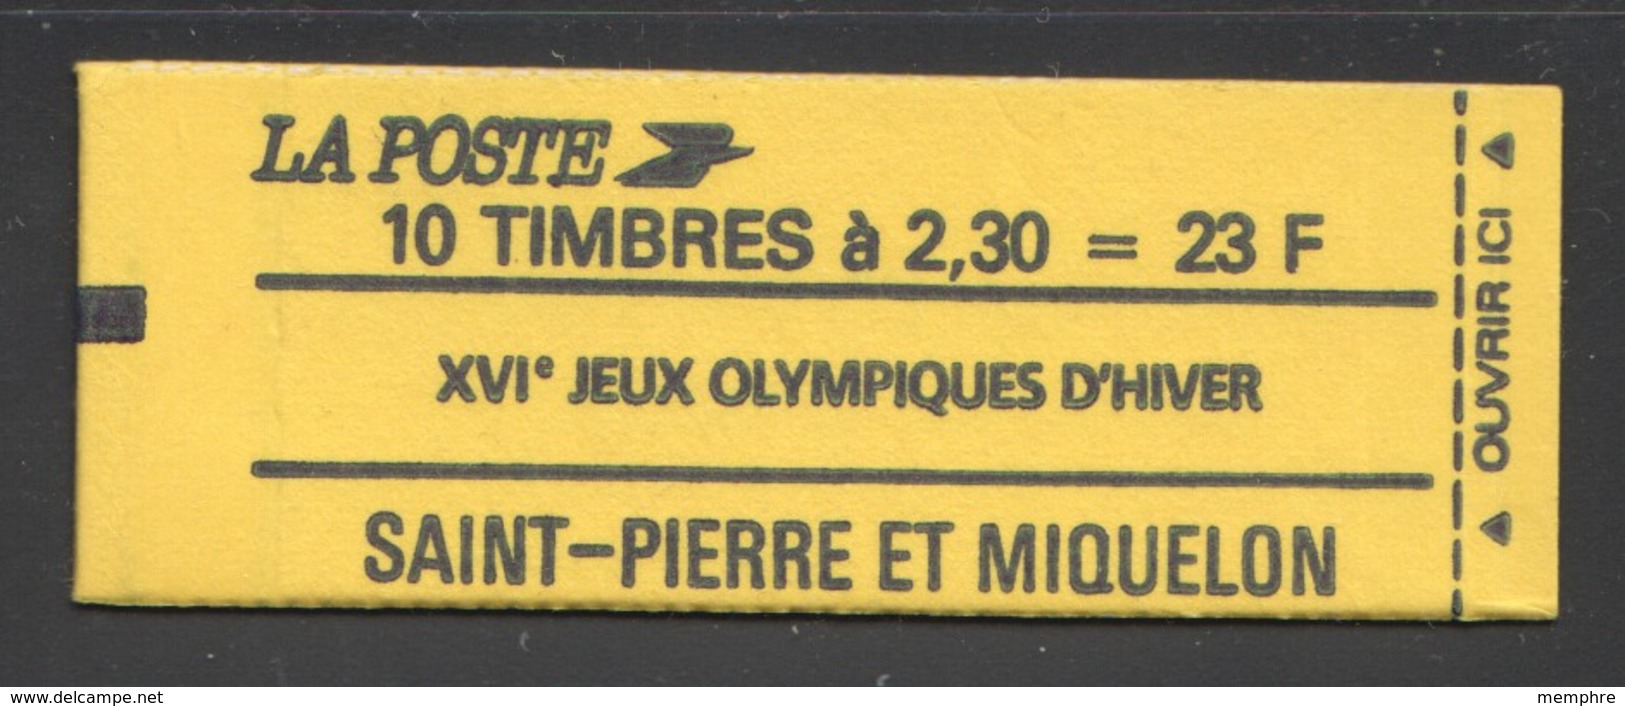 1990 Carnet Des XVIè Jeux Olympiques D'hiver - Daté - Imperforates, Proofs & Errors